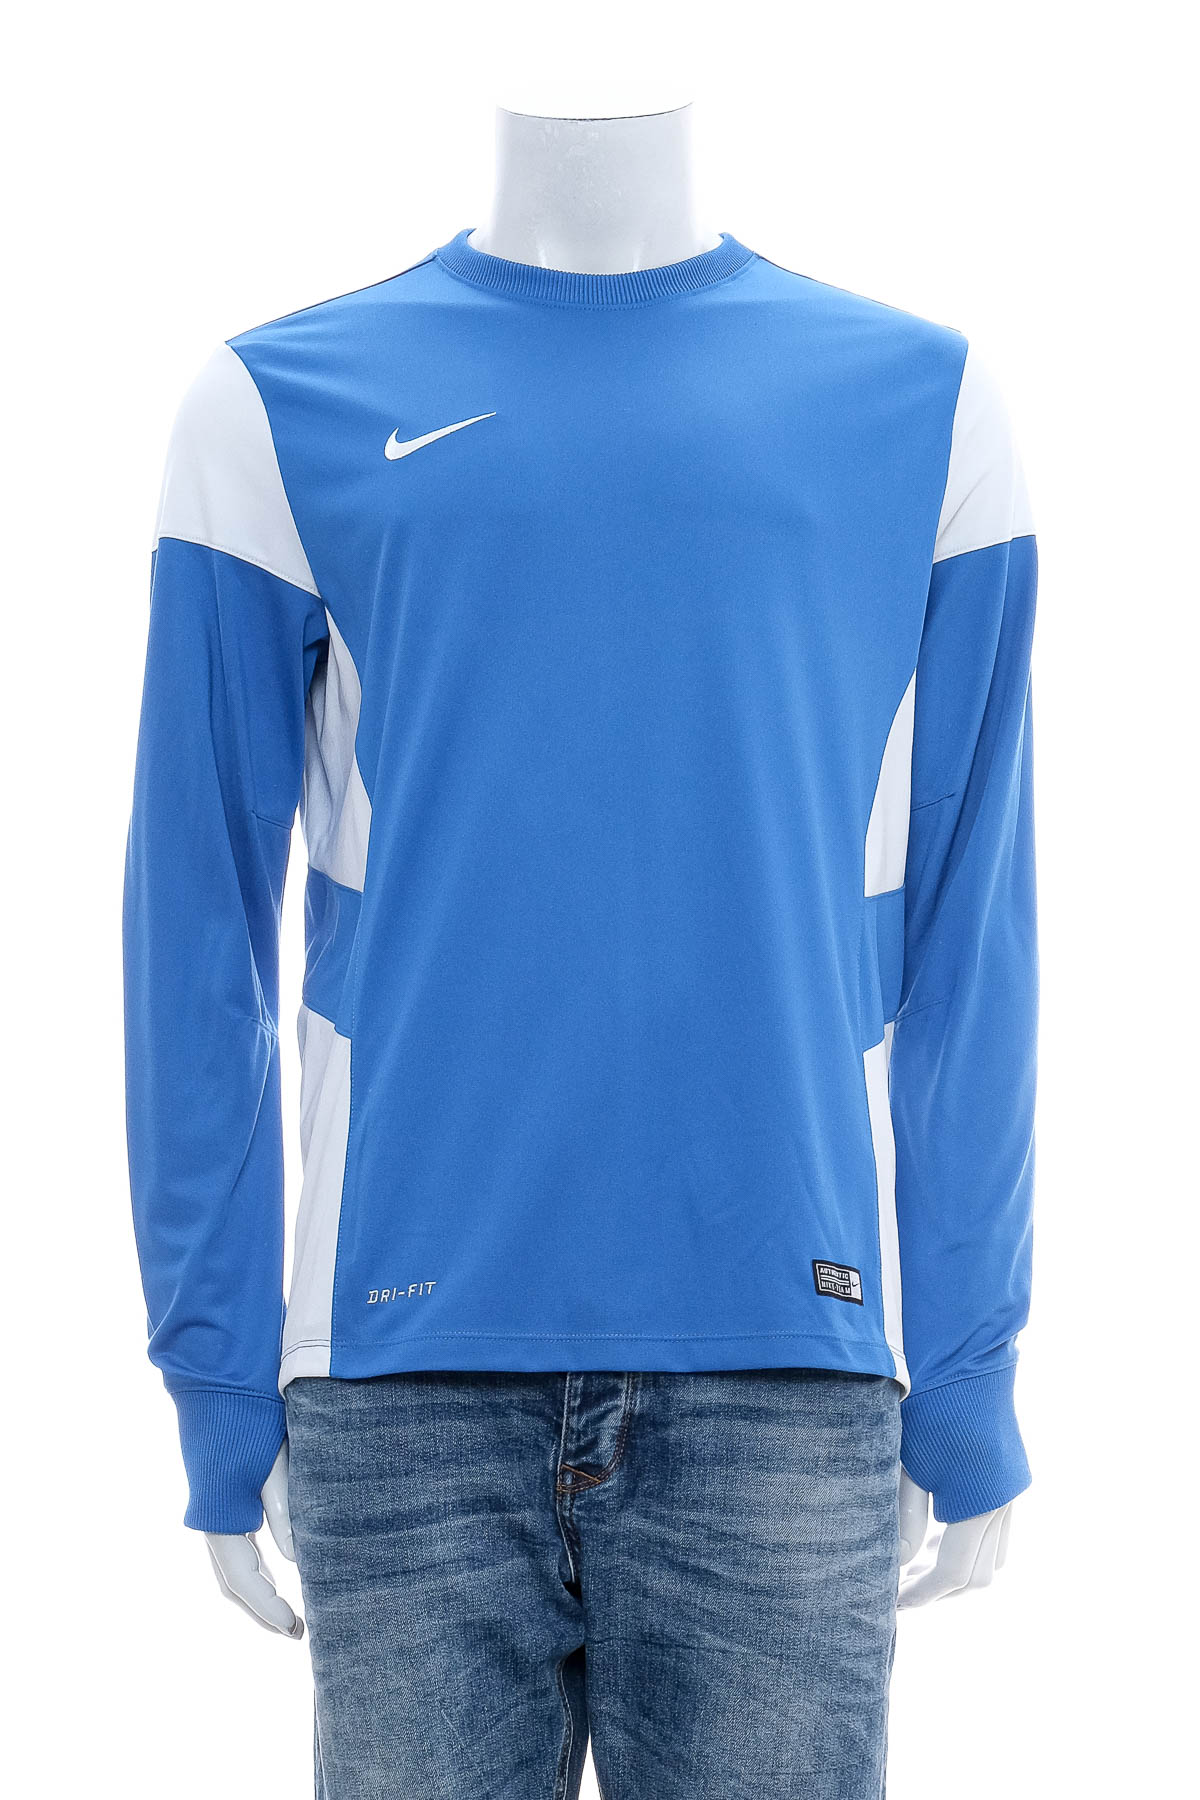 Αθλητική μπλούζα ανδρών - NIKE - 0